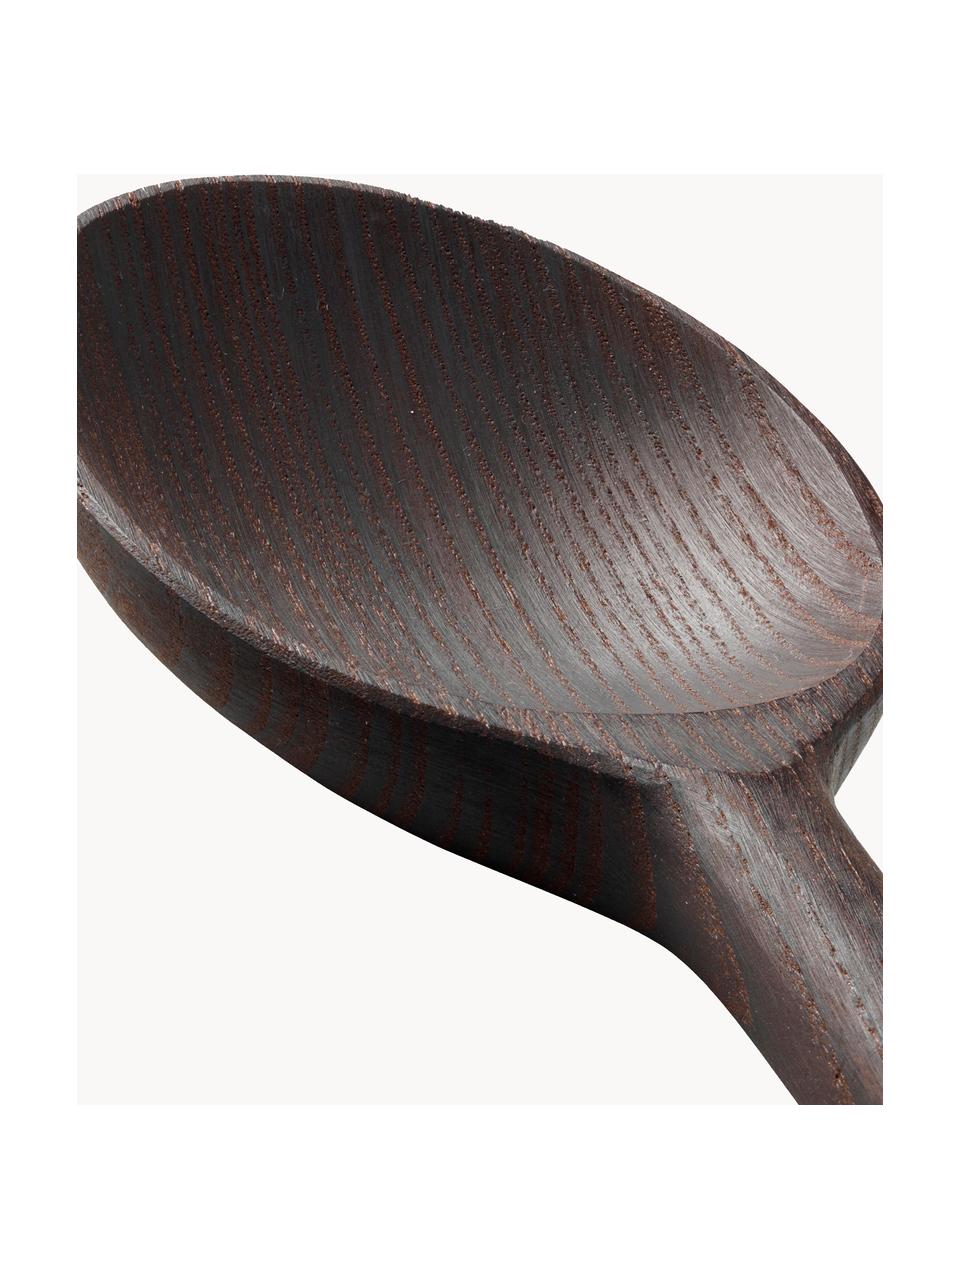 Schöpfkelle RÅ aus Eschenholz, Eschenholz

Dieses Produkt wird aus nachhaltig gewonnenem, FSC®-zertifiziertem Holz gefertigt., Eschenholz, L 30 cm